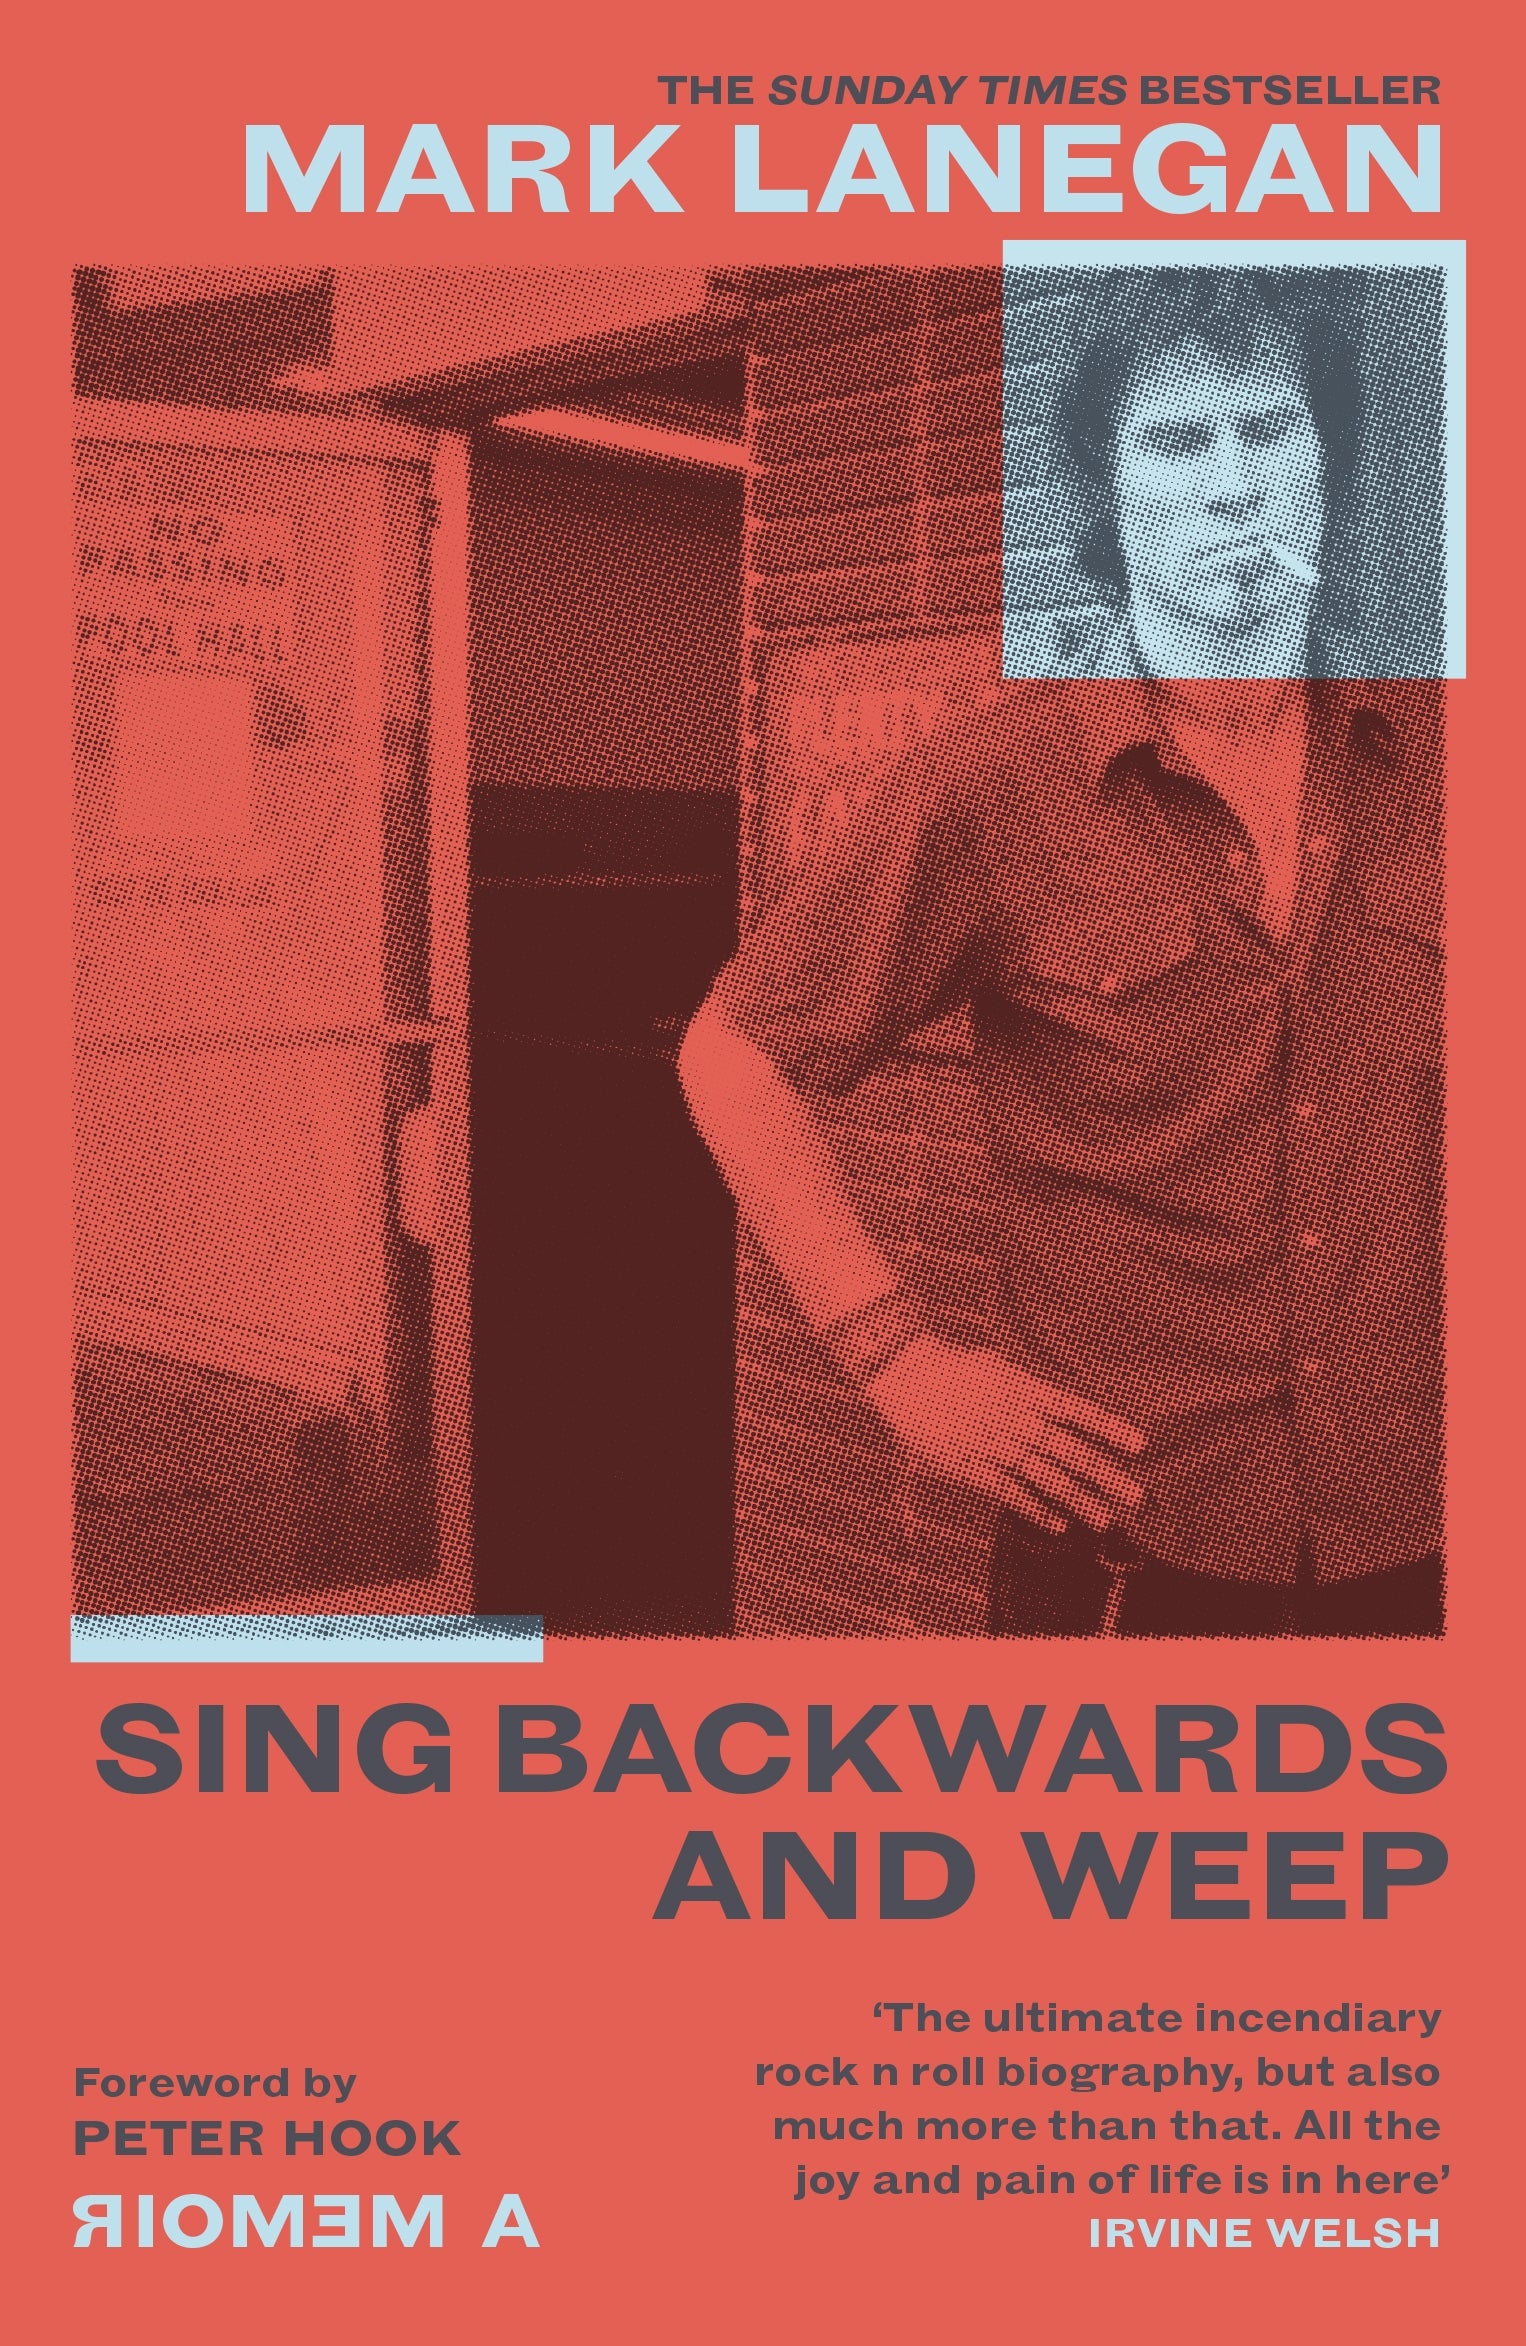 Sing Backwards and Weep by Mark Lanegan